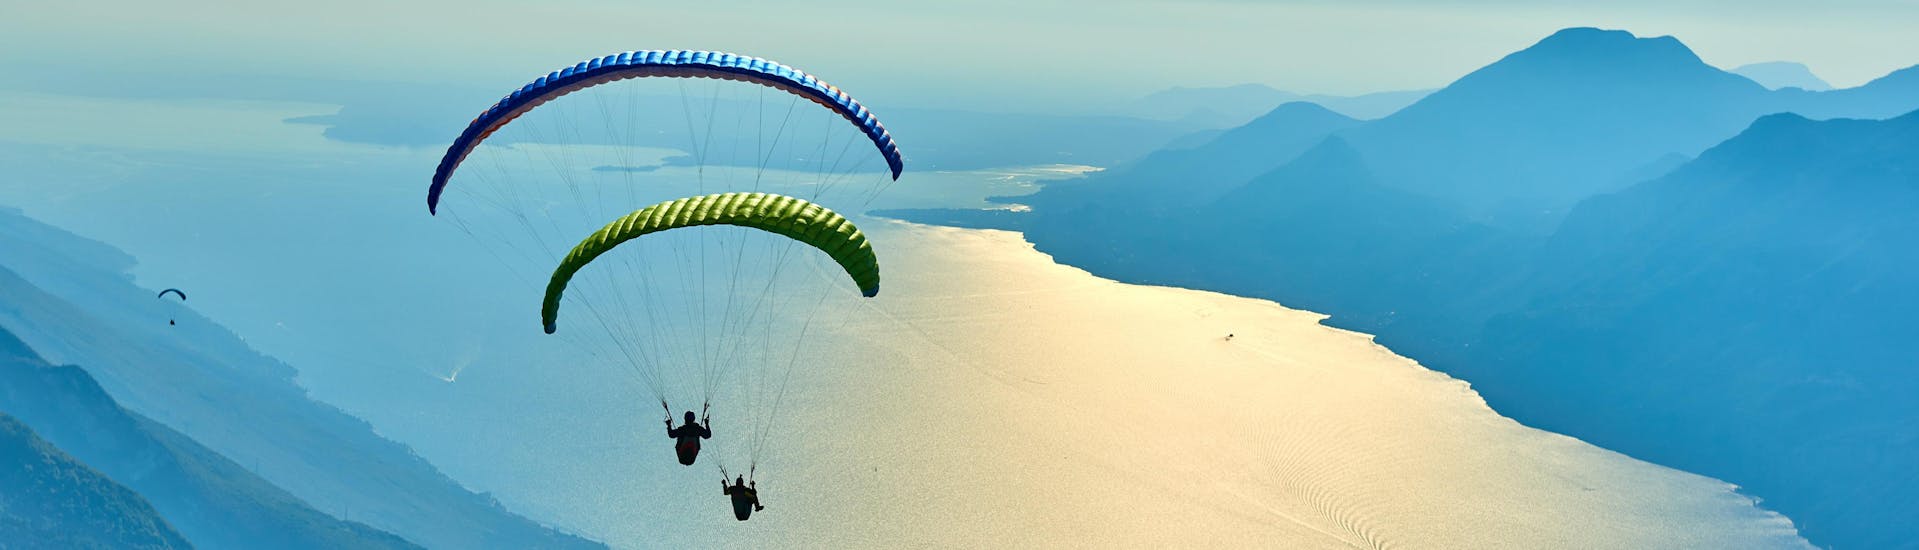 Malcesine: Een tandemvlucht vindt plaats in een van de hotspots voor paragliding.